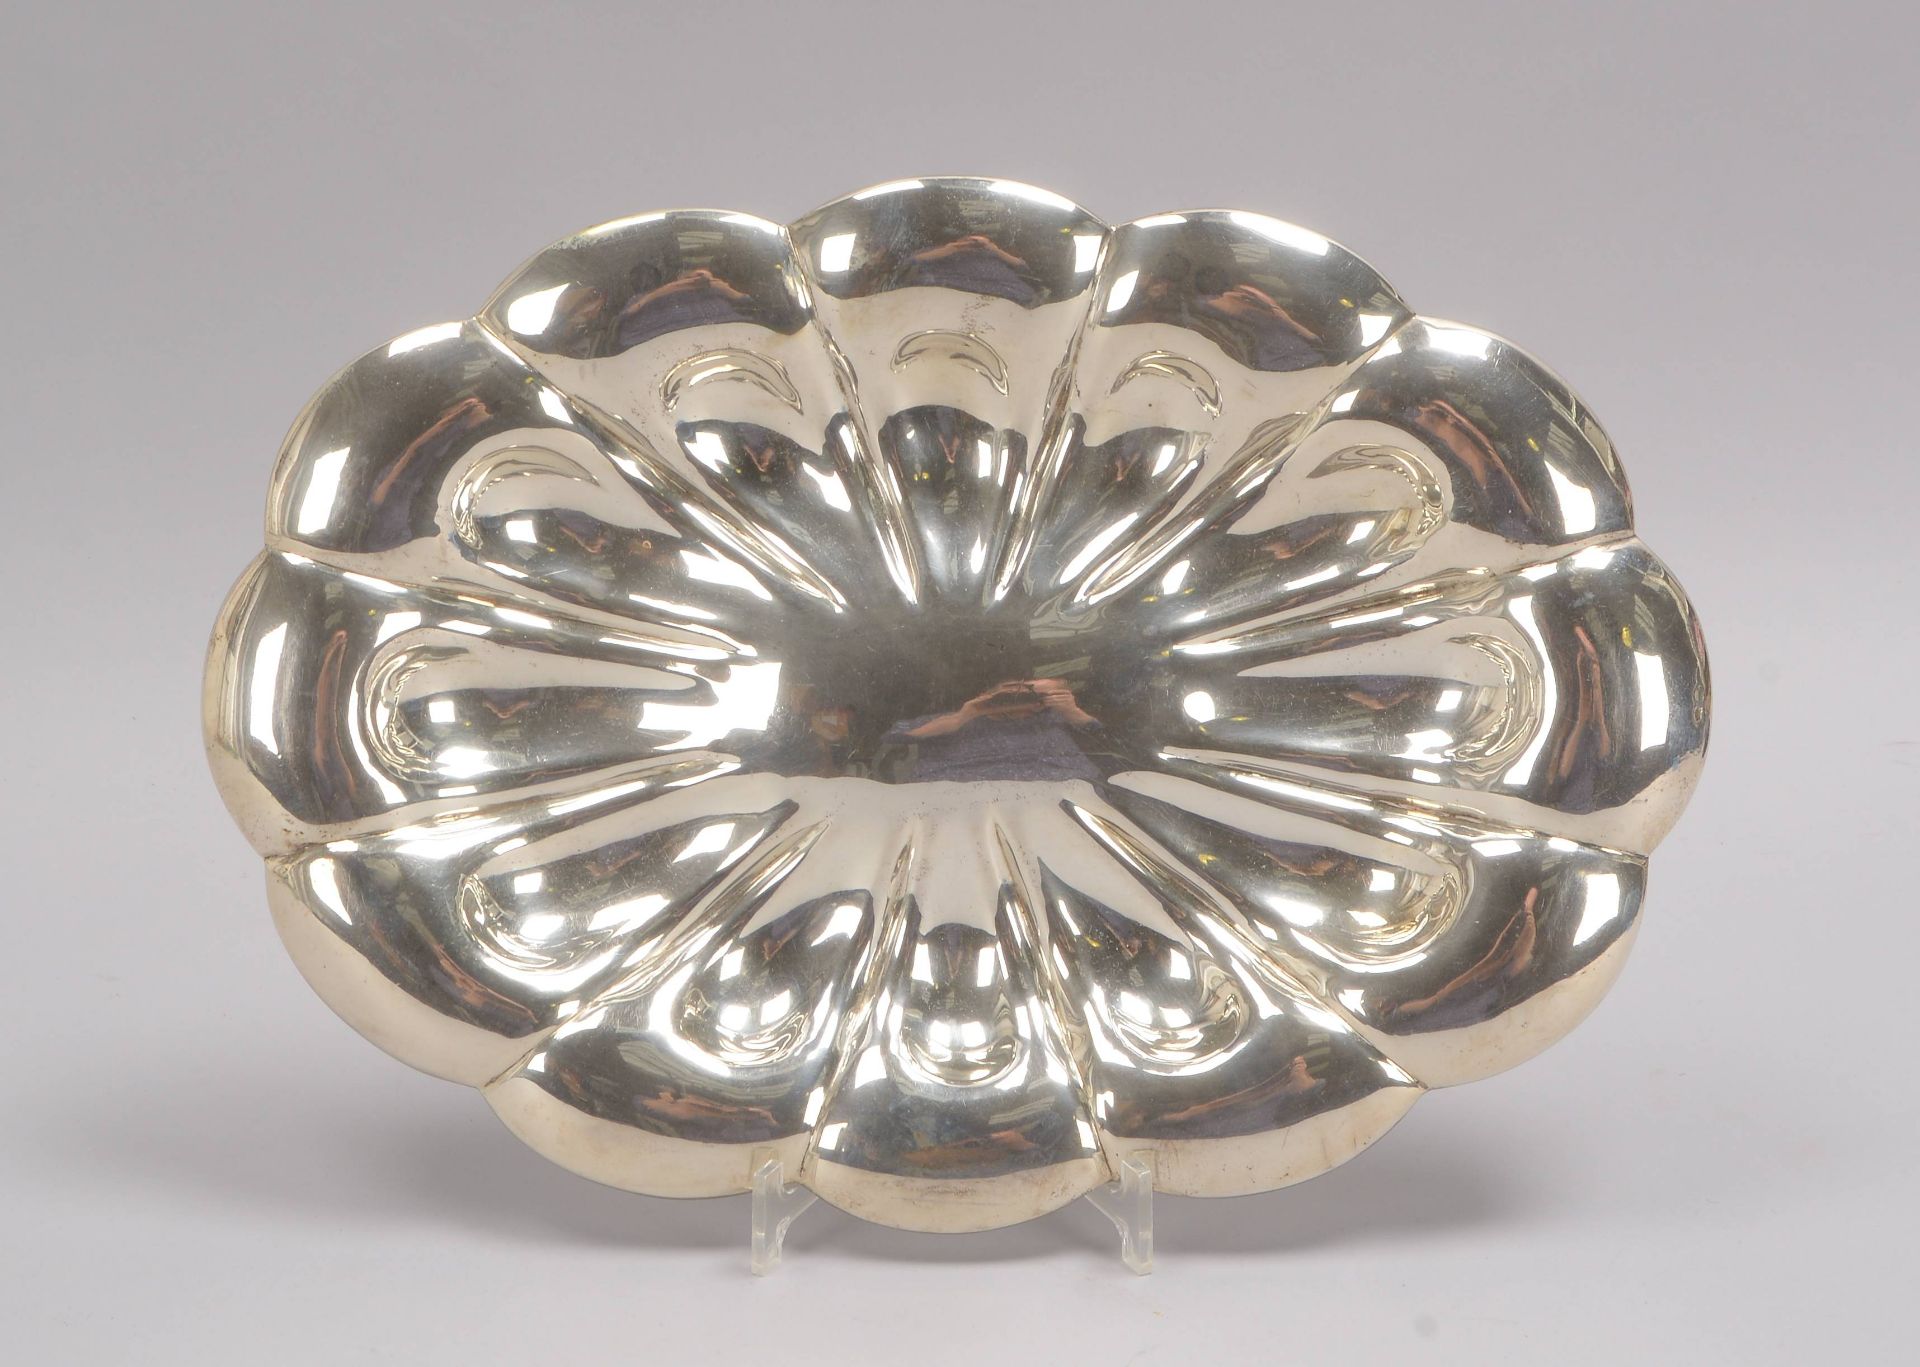 Schale, 925 Silber (punziert NEKIV), ovale Form; Maße 49 x 22 cm, Gewicht 984 g